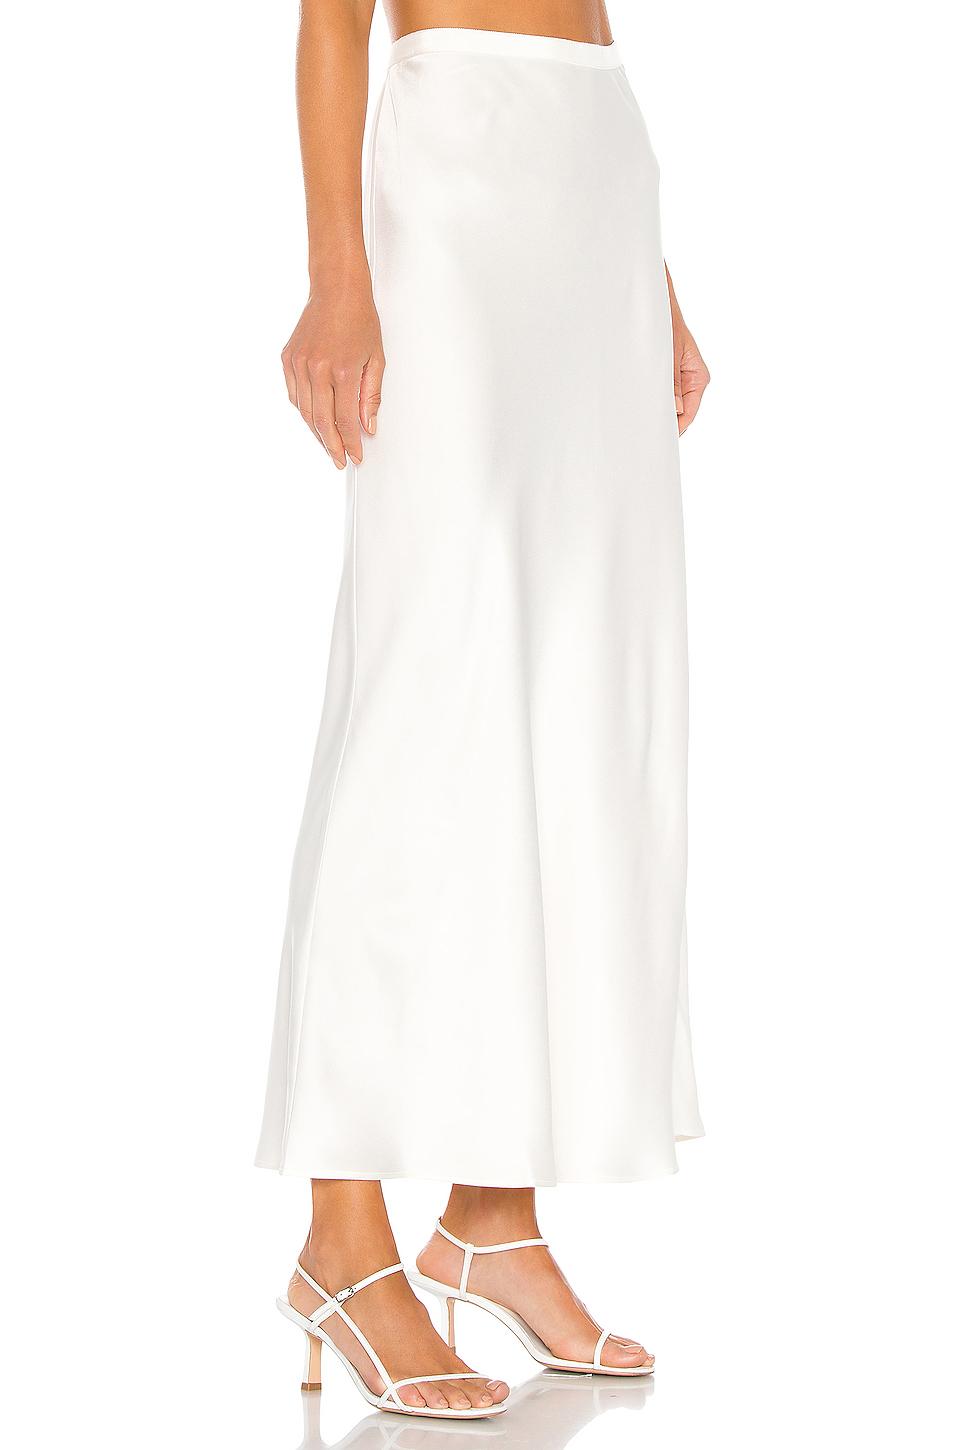 Anine Bing Noel Skirt in White | Lyst